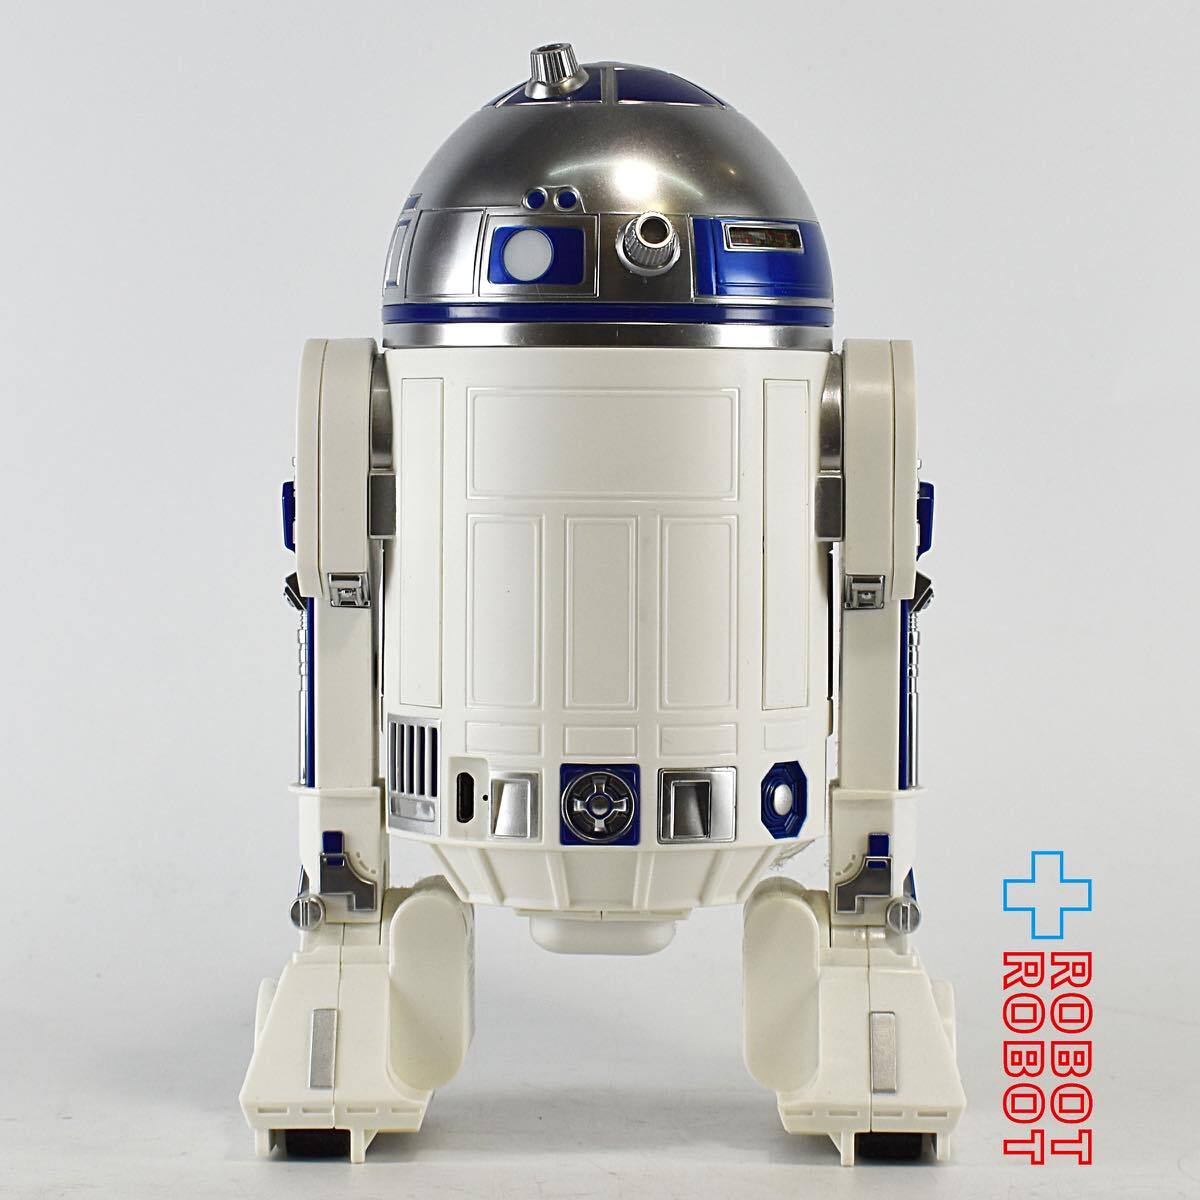 スター・ウォーズ R2-D2 APP-ENABLED DROID sphero 開封